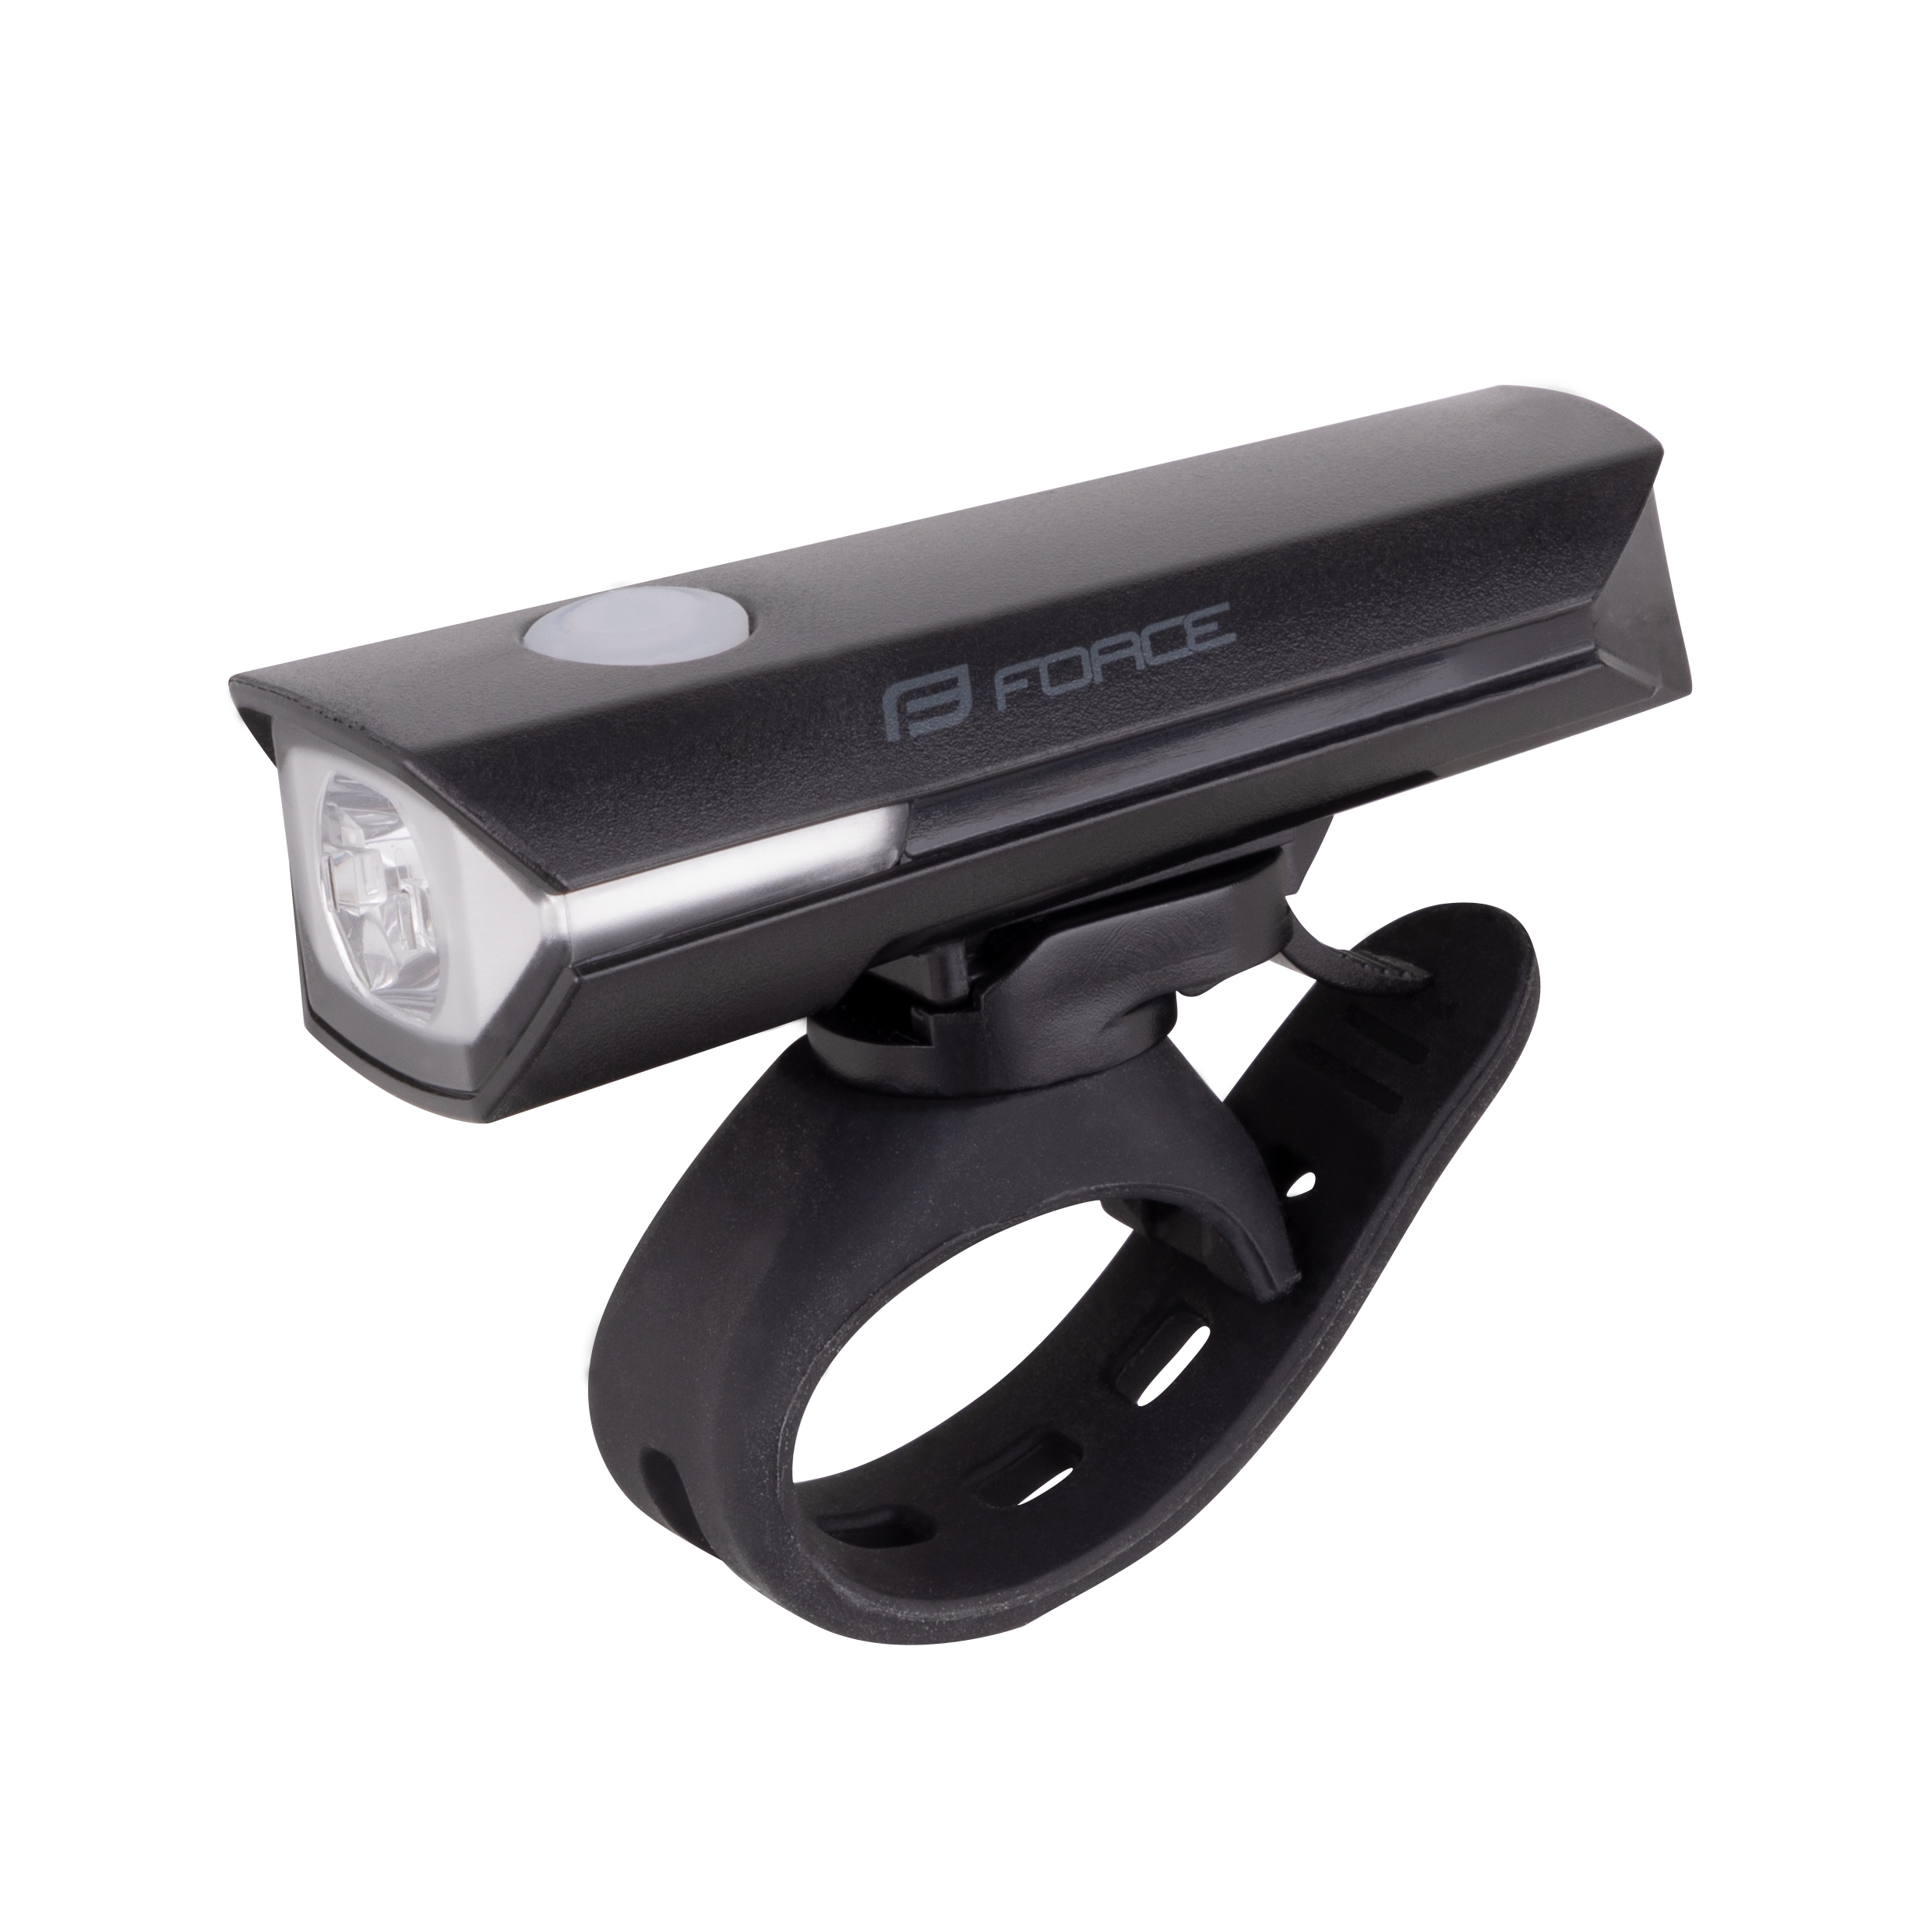 světlo přední FORCE FLUX 200LM USB, černé umístění: Přední, baterie: USB dobíjecí, svítivost: větší než 110LM